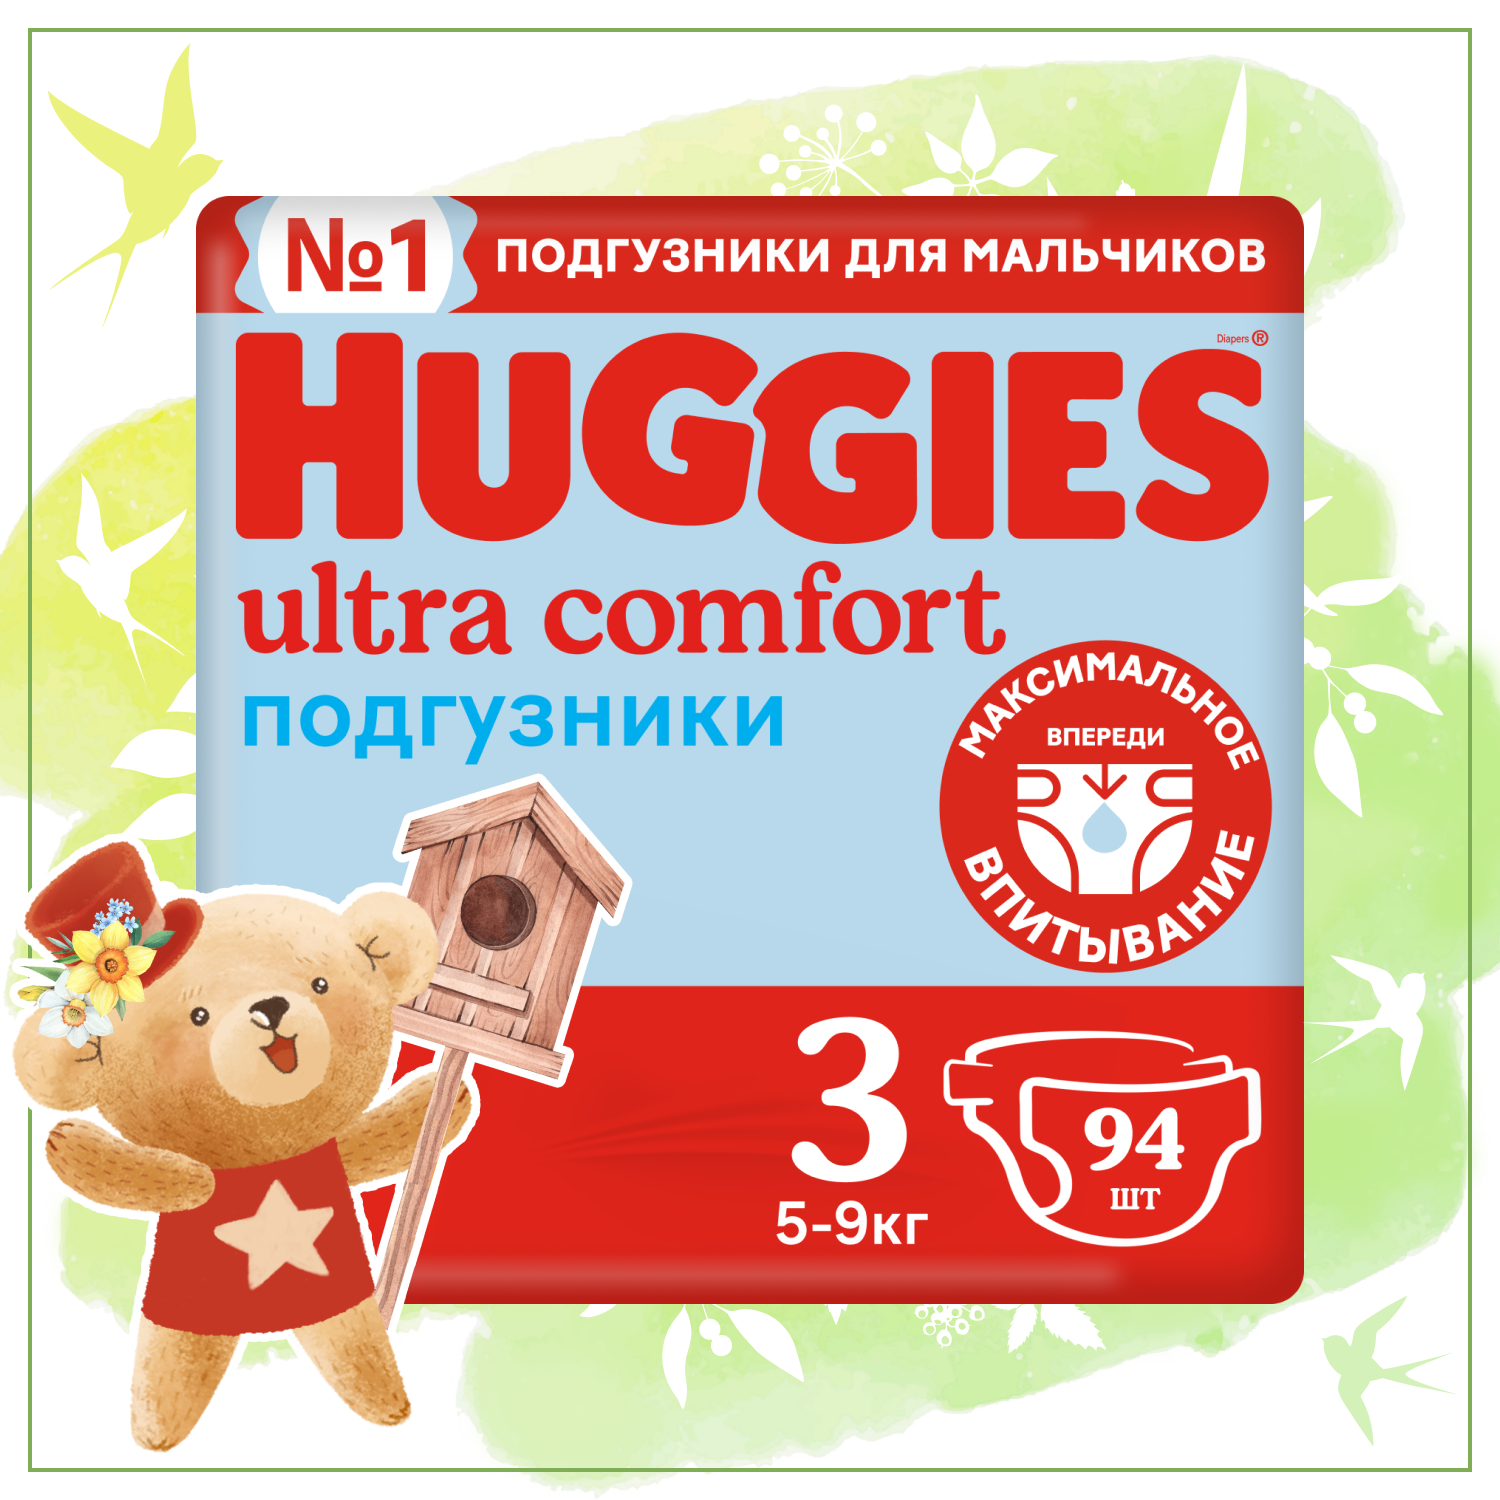 Подгузники для мальчиков Huggies Ultra Comfort 3 5-9кг 94шт - фото 1